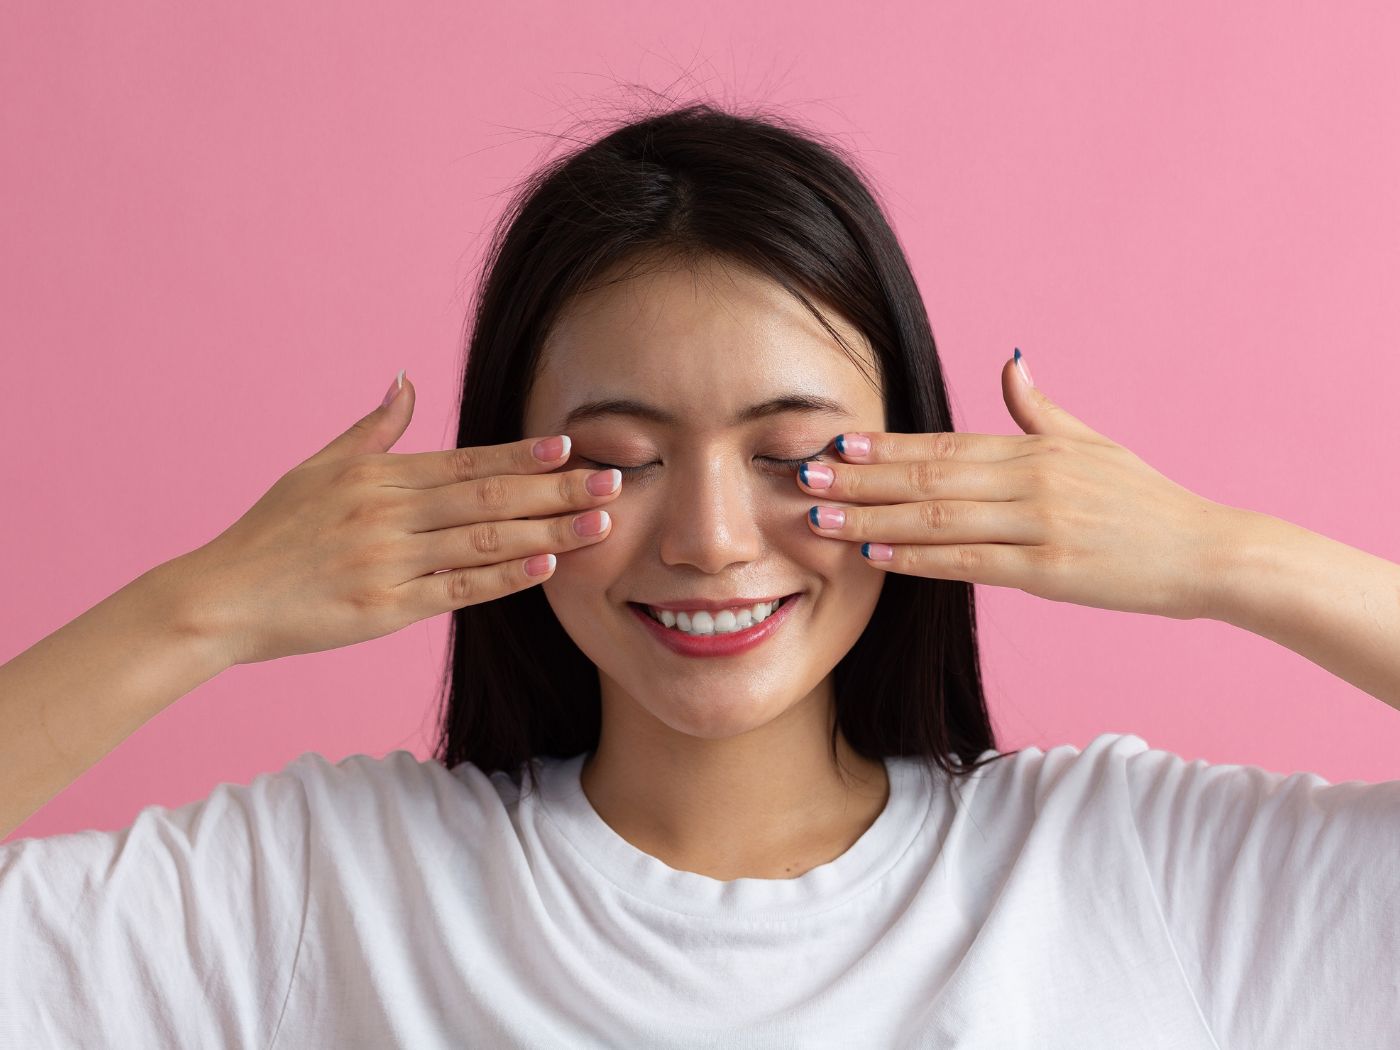 7 Lazy Eye Exercise To Improve Eye Sights